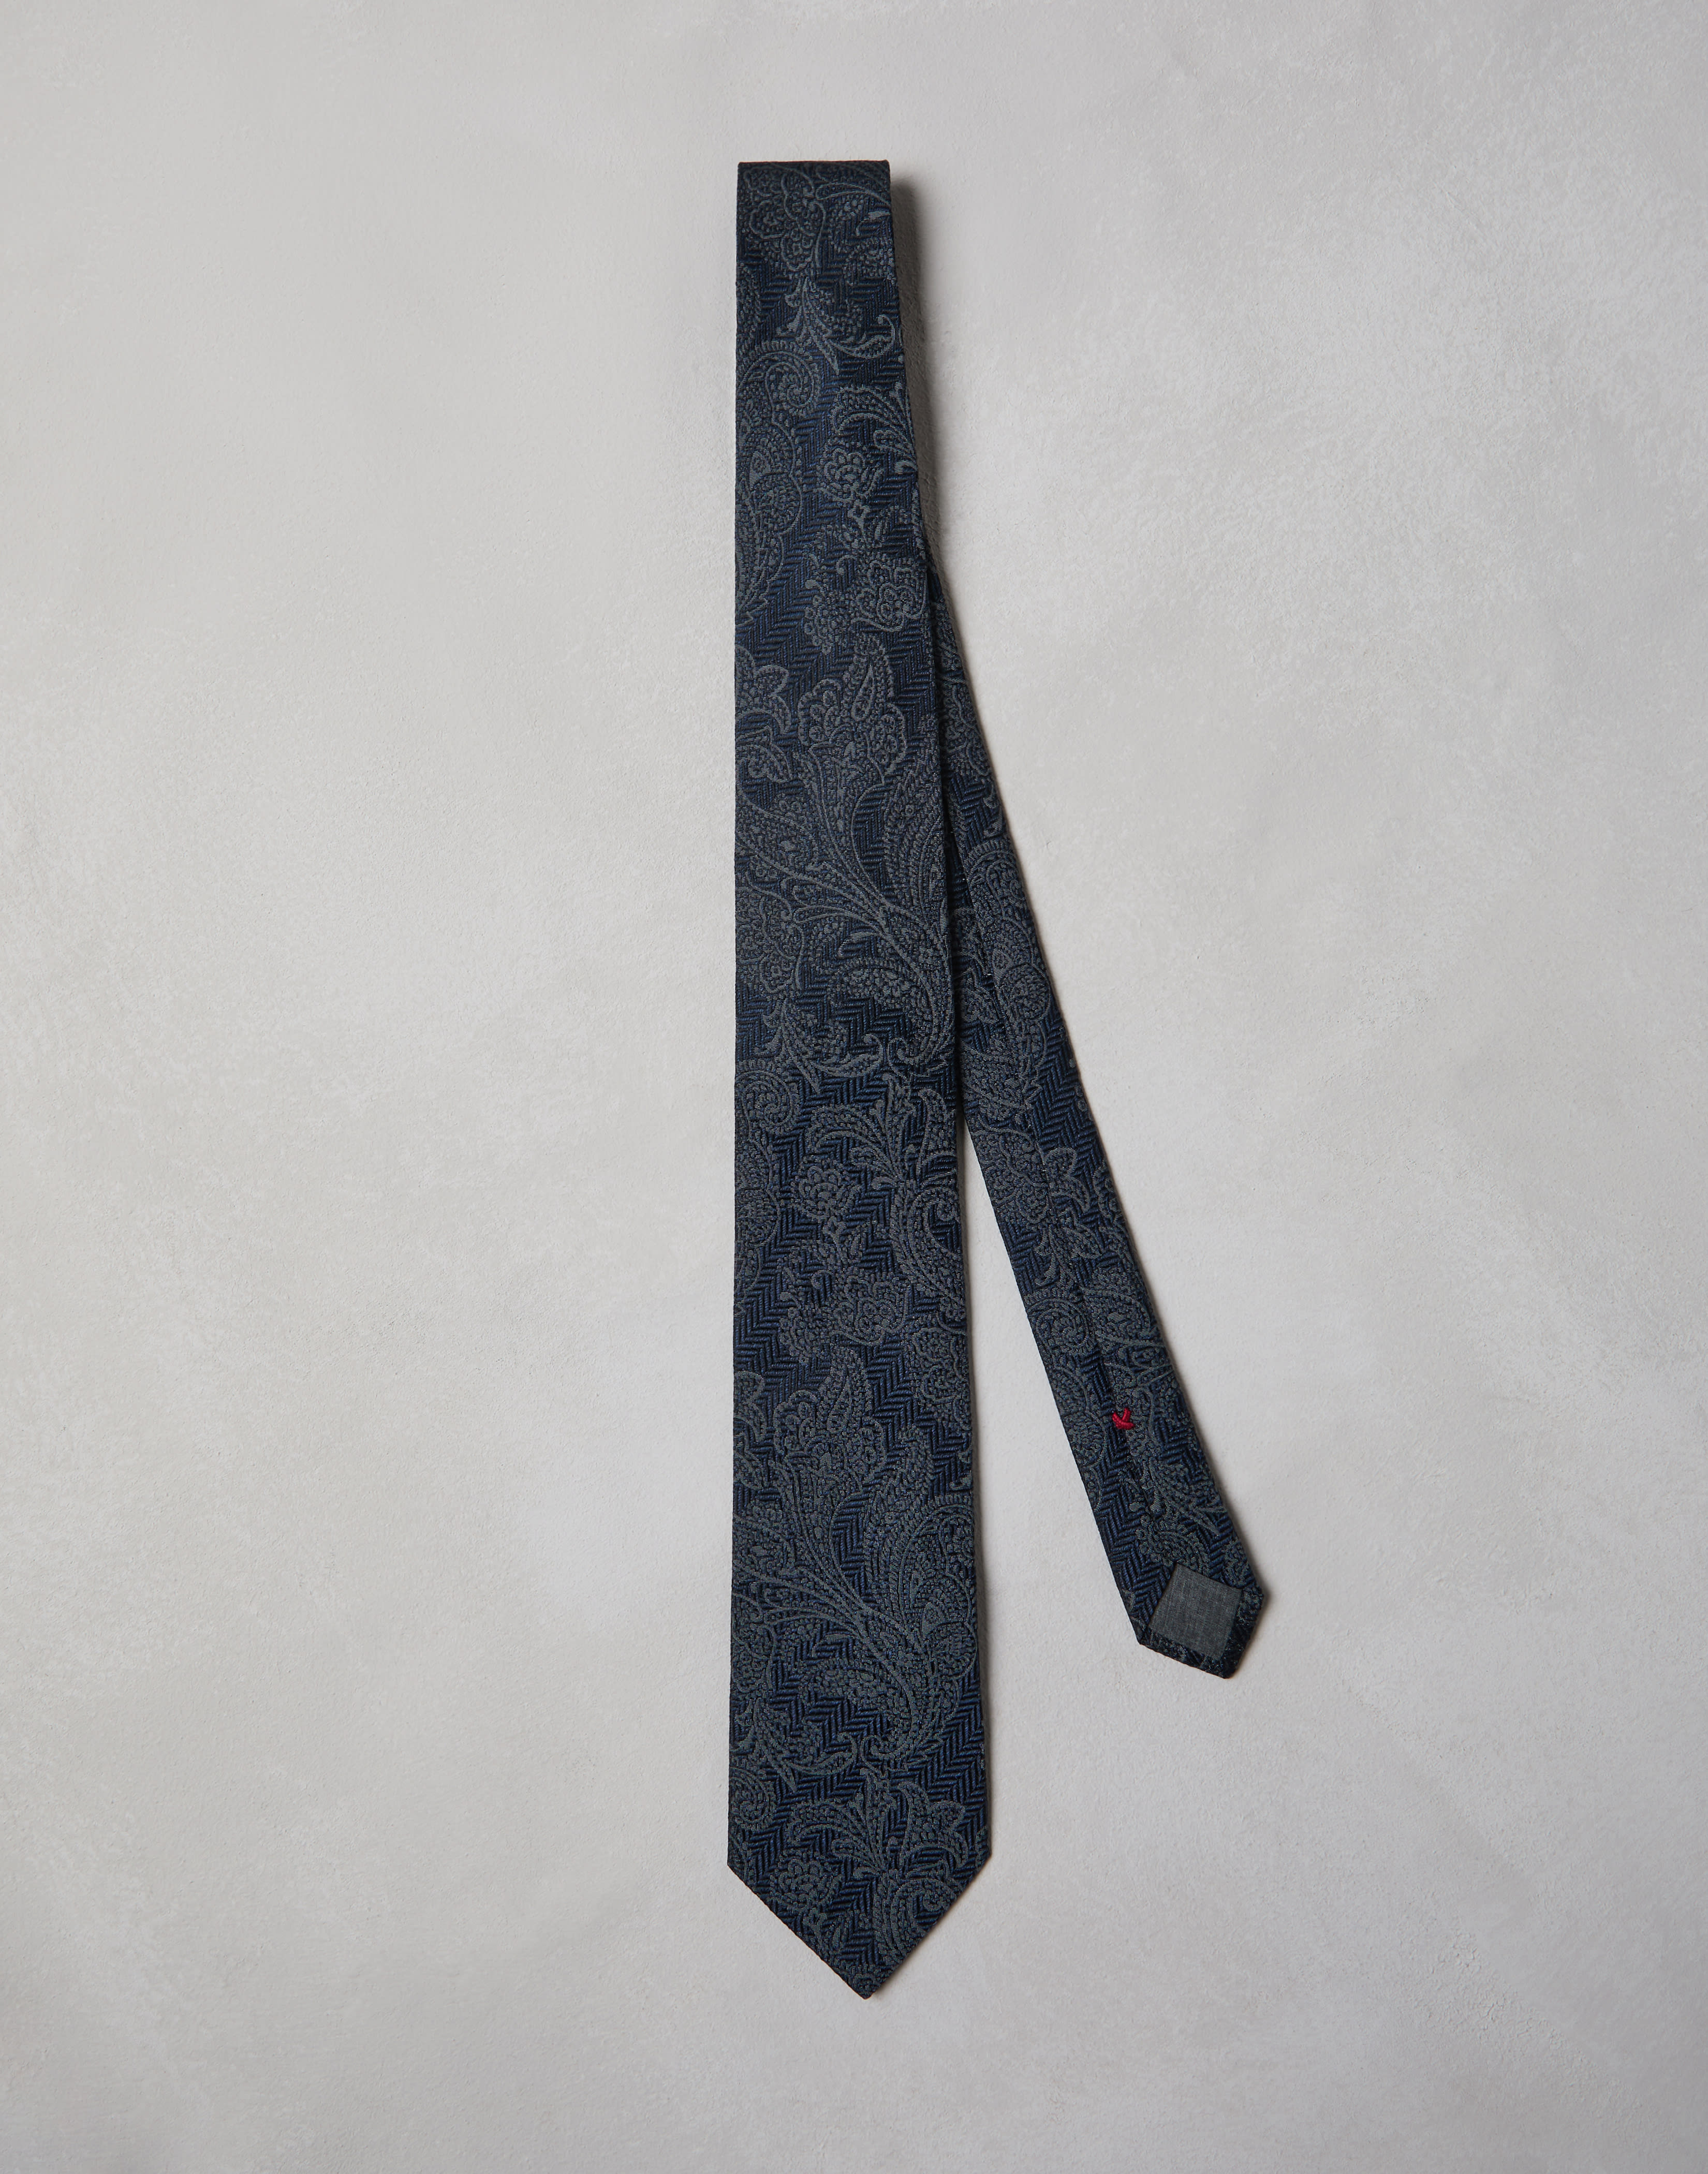 Necktie with pattern